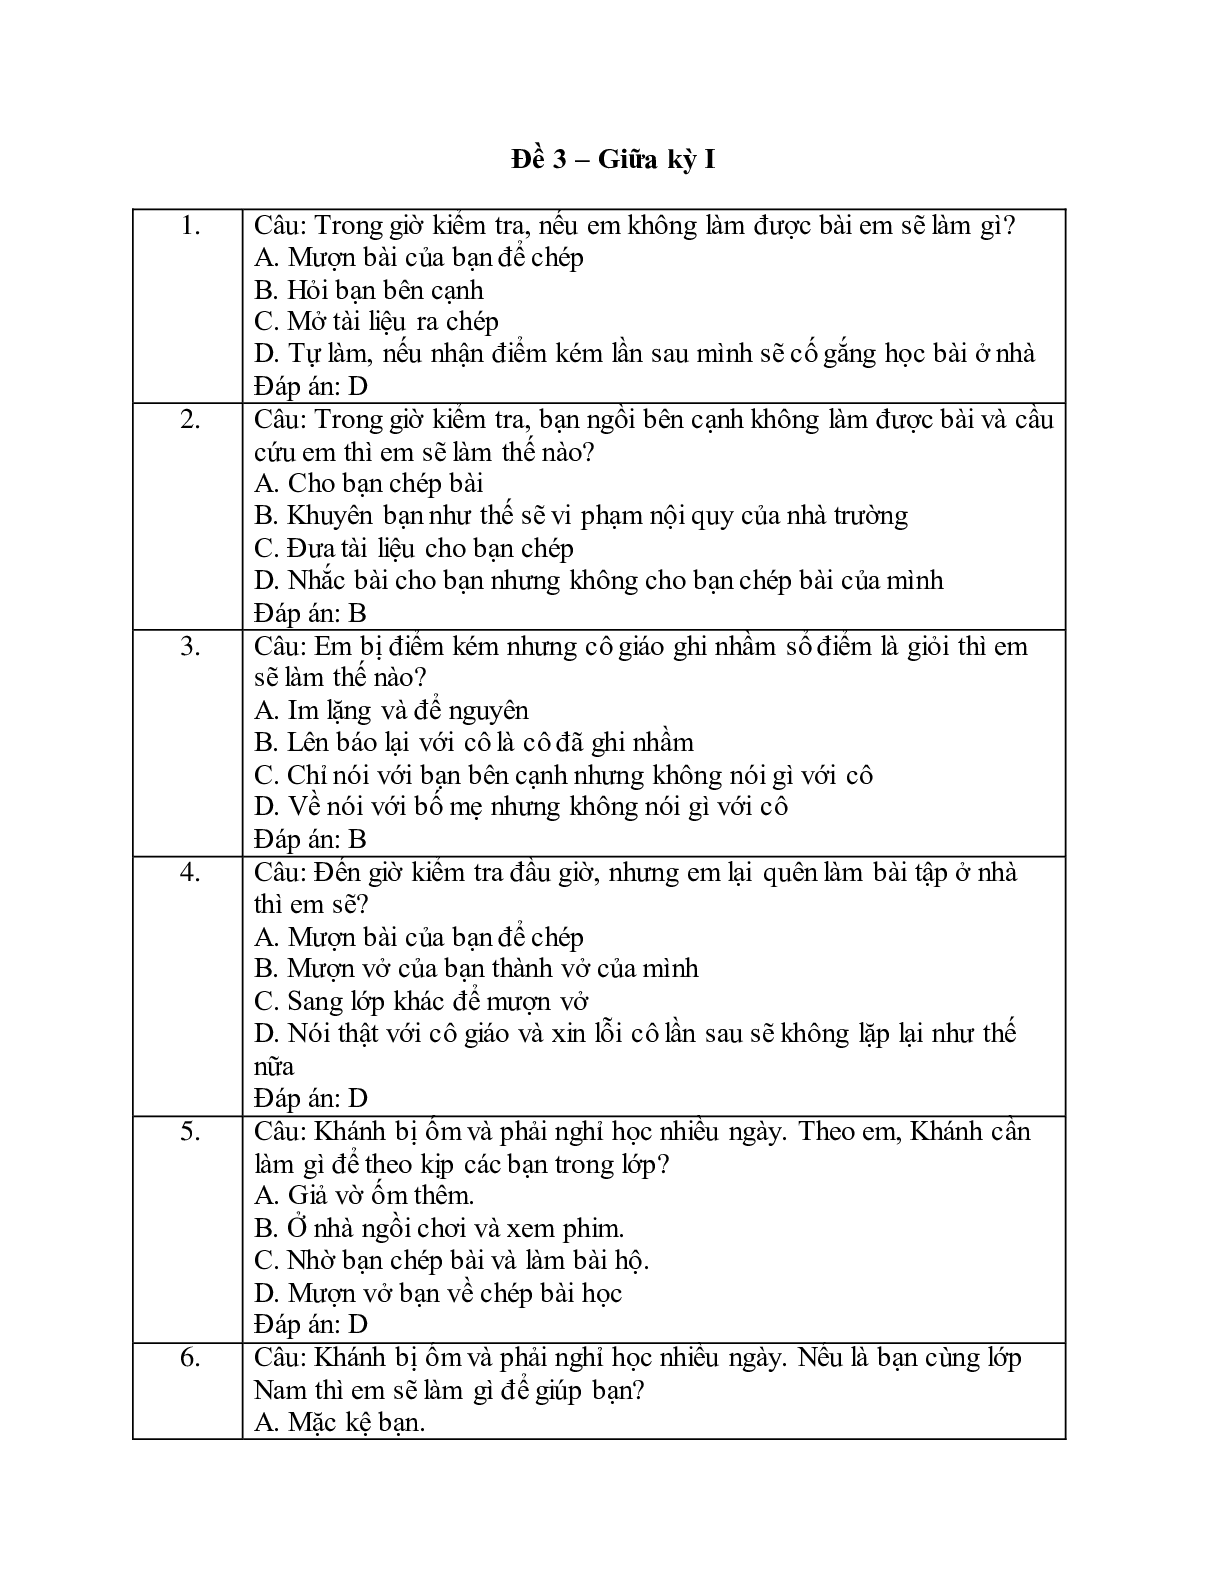 Đề thi giữa kì 1 môn Đạo đức lớp 4 có đáp án (5 đề) (trang 8)